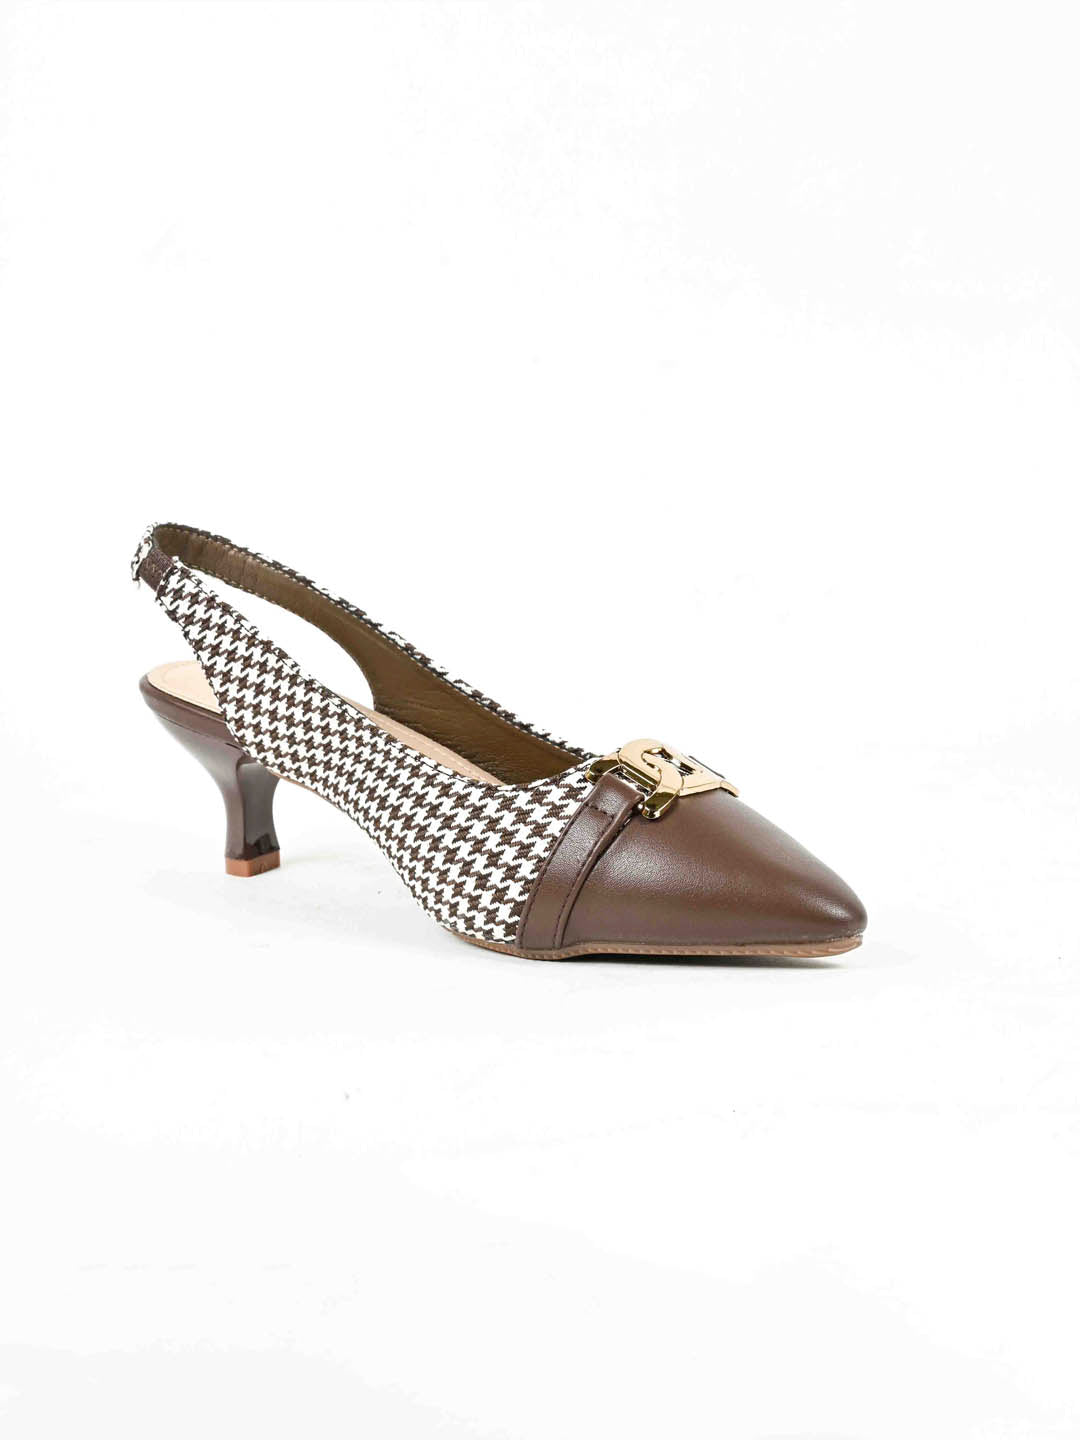 Chocolate Brown heels ! | Heels, Women shoes, Pumps heels